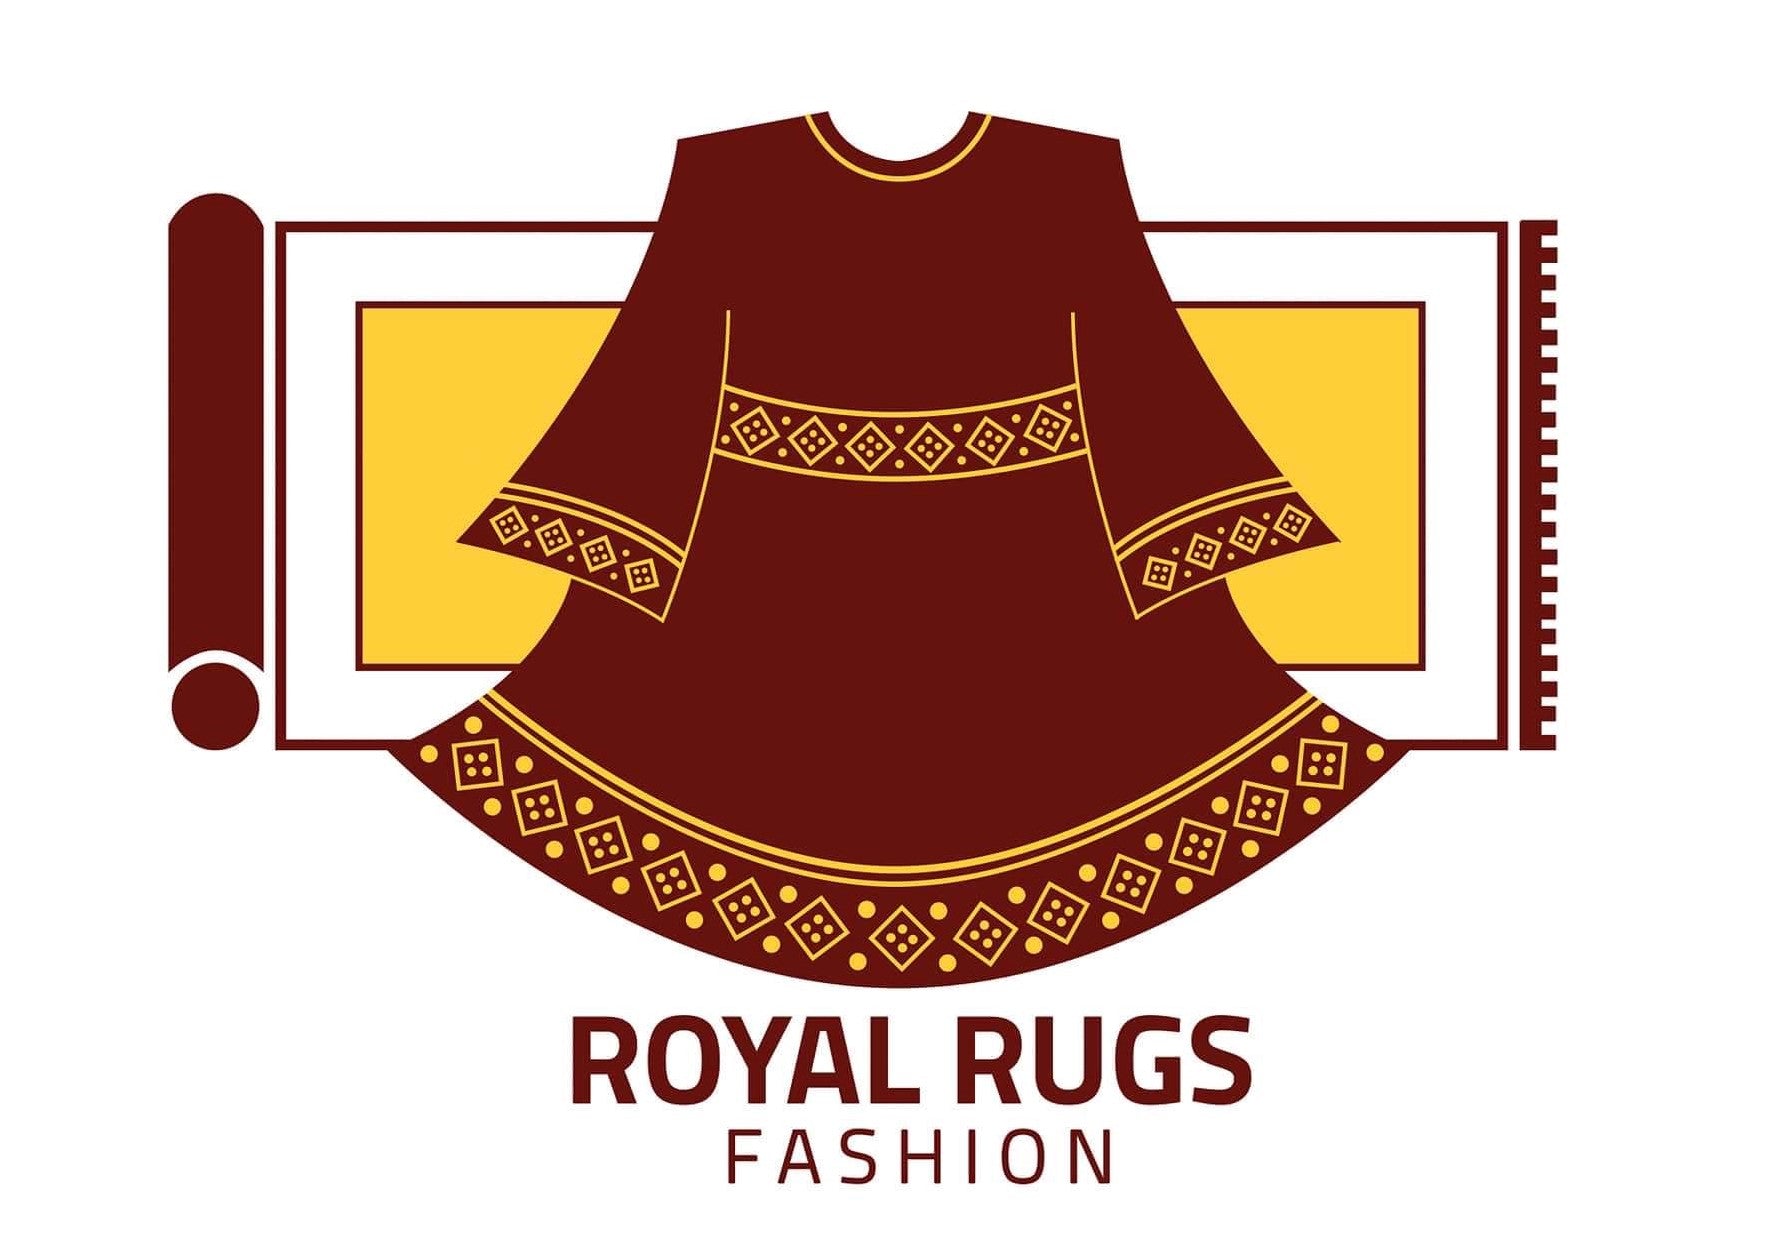 Royal Rugs Fashion